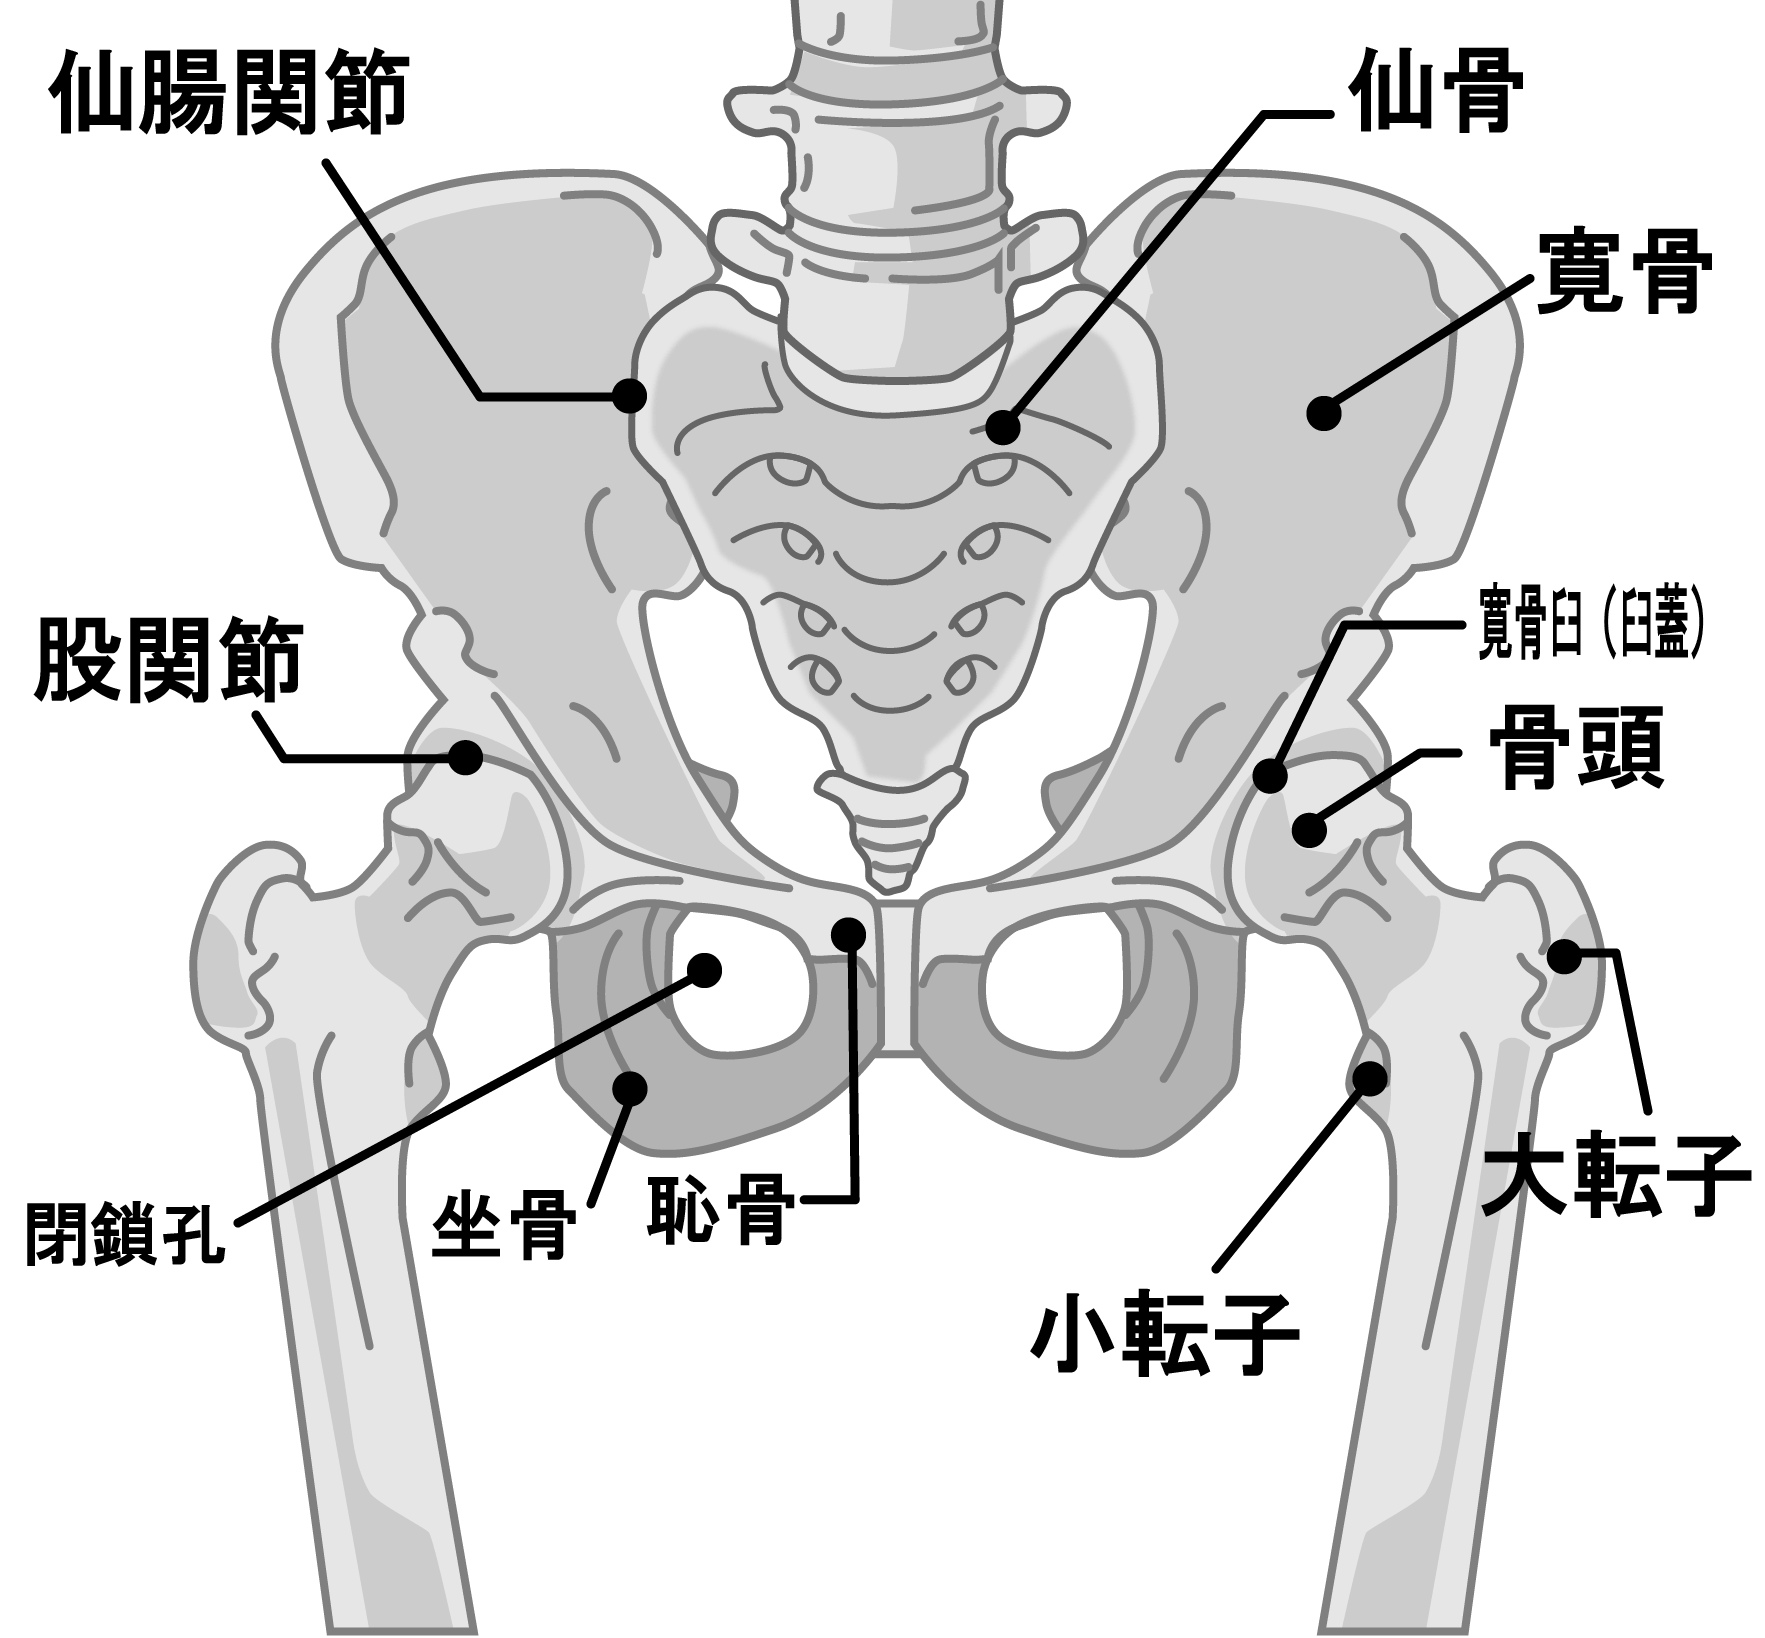 股関節周辺の骨のイラスト。骨盤（寛骨、仙骨、坐骨、恥骨）や大腿骨により股関節が構成されています。股関節は骨盤の寛骨臼というくぼみに大腿骨骨頭がはまりこんでいるため、大きく動かす事ができる。